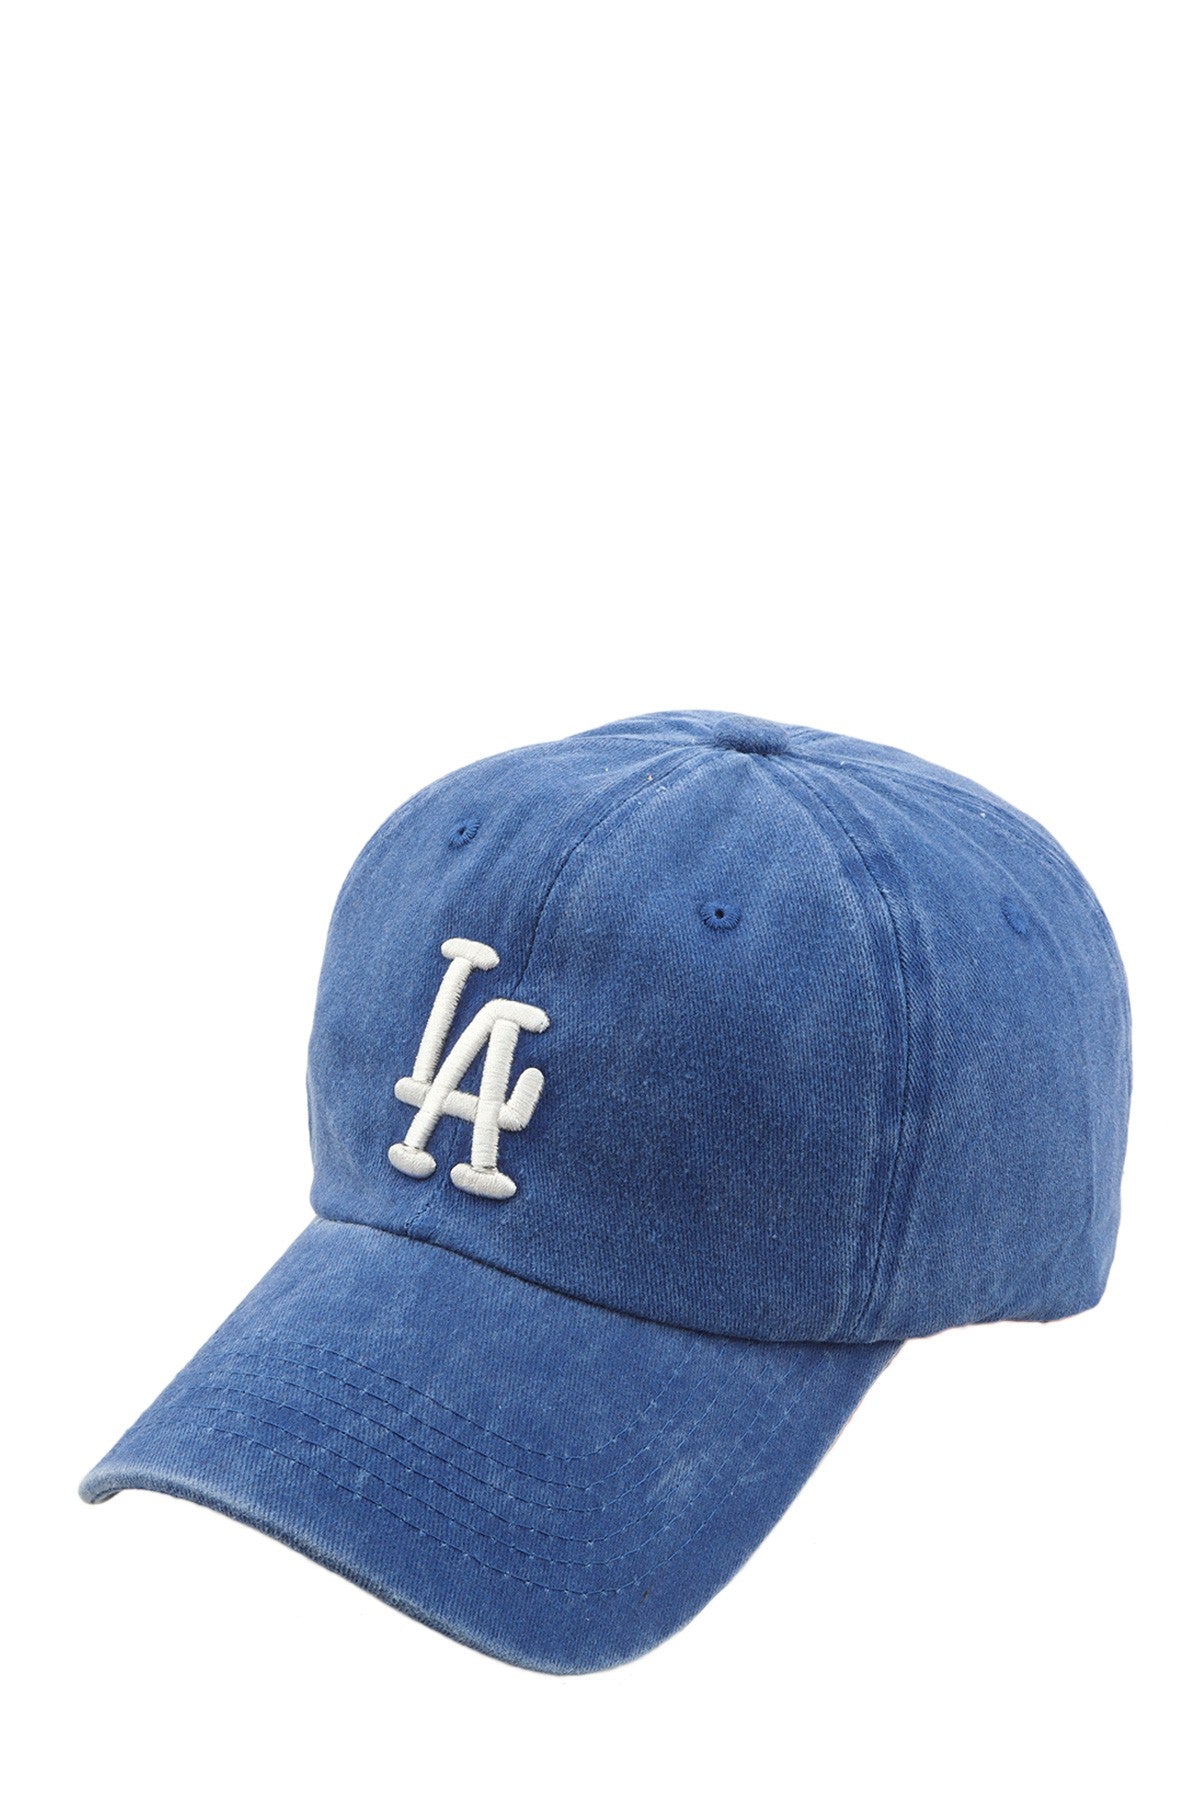 blue la hat